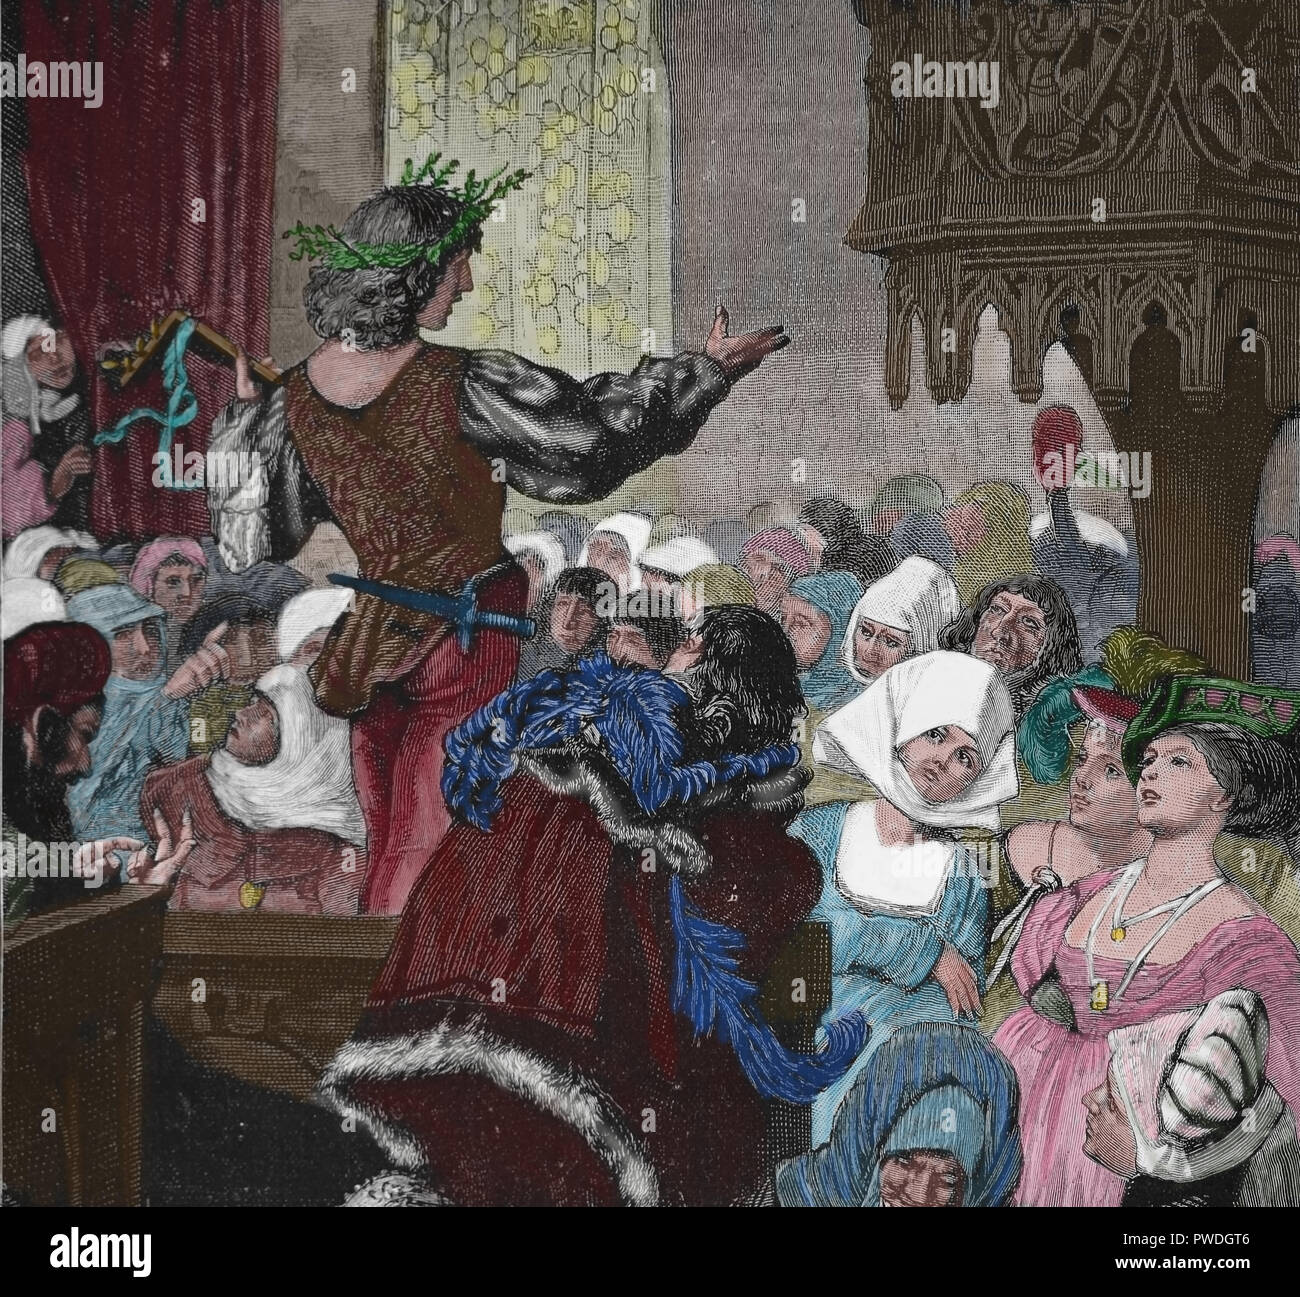 Meister Singer (meistersinger). Deutschland. Wettbewerb der Musik. 14. und 16. Jahrhunderts. Gravur, 1882. Stockfoto